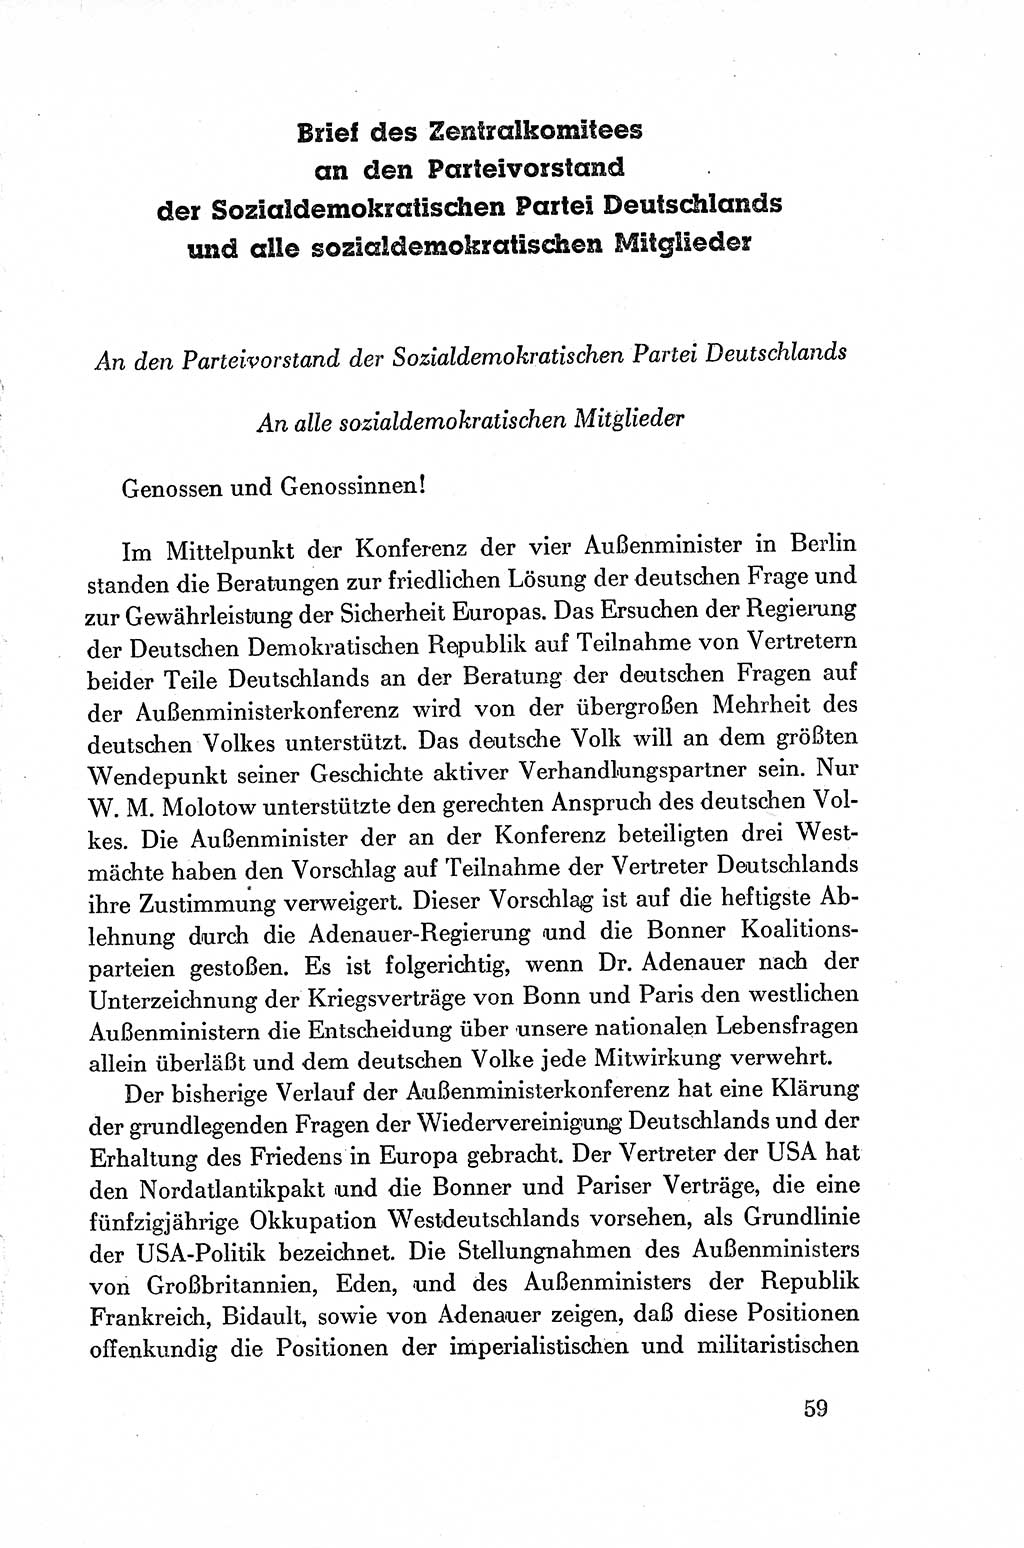 Dokumente der Sozialistischen Einheitspartei Deutschlands (SED) [Deutsche Demokratische Republik (DDR)] 1954-1955, Seite 59 (Dok. SED DDR 1954-1955, S. 59)